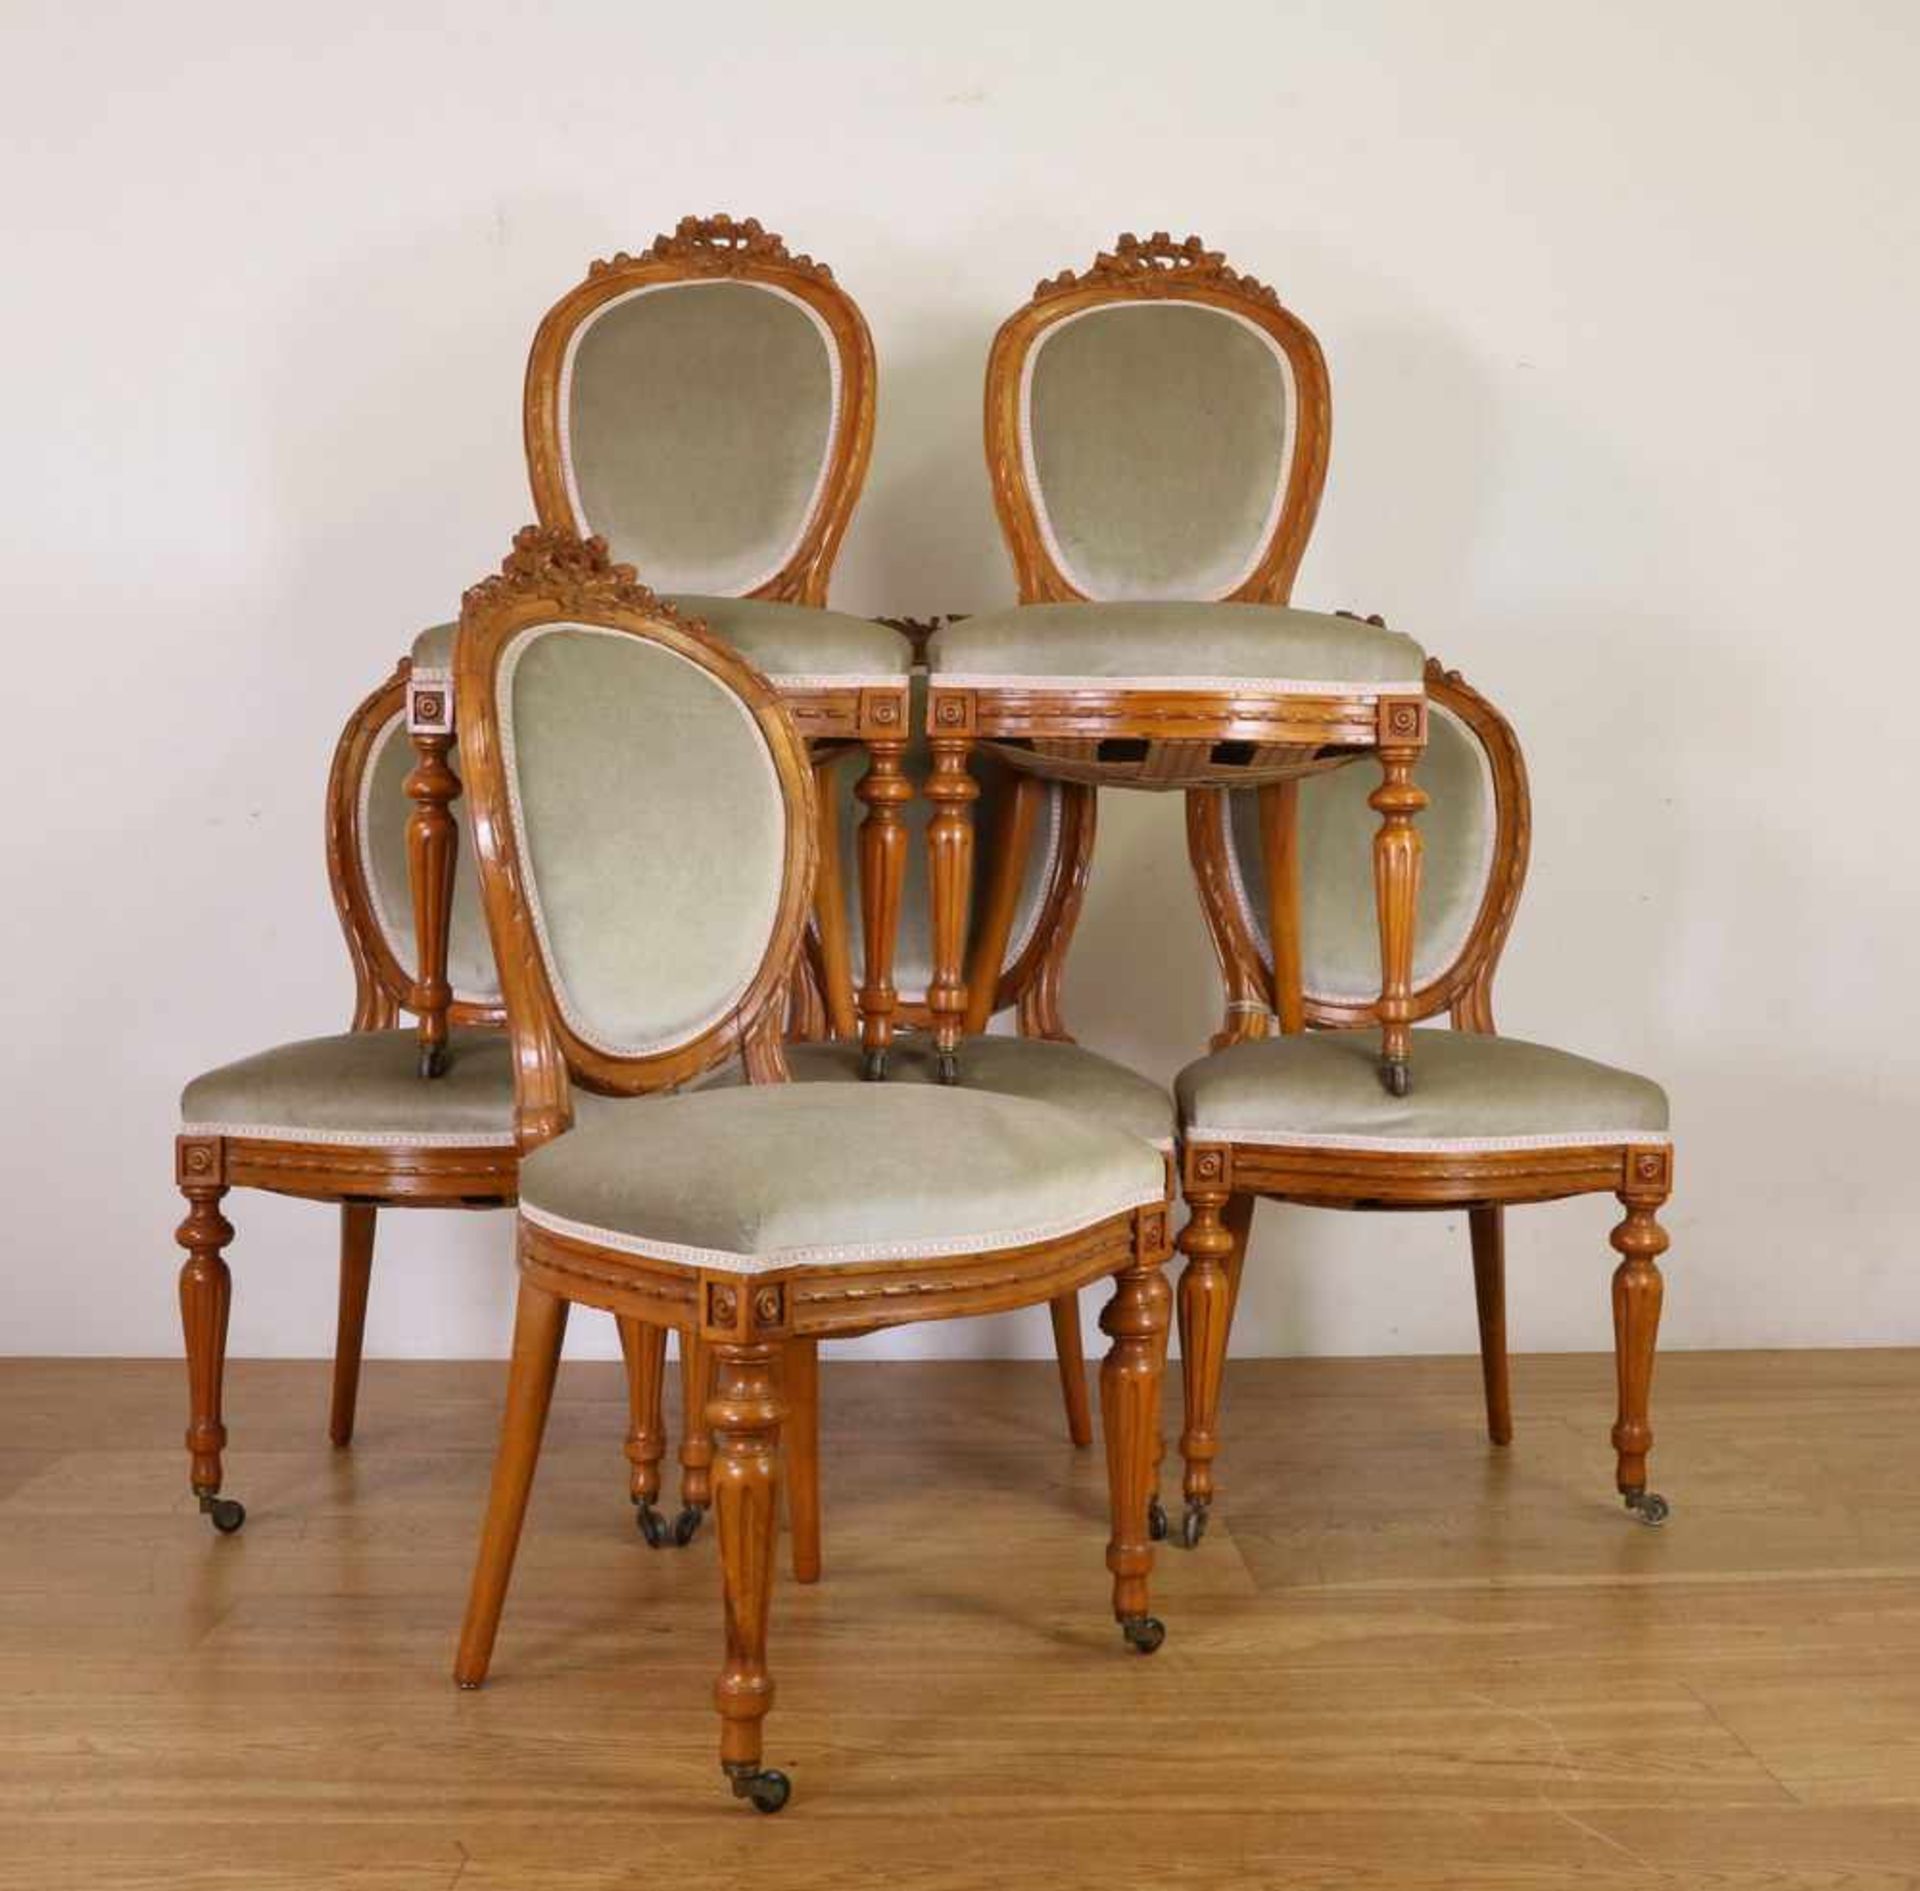 Set van zes beukenhouten stoelen in Lodewijk XVI-stijlmet grijs/groene velours stoffering. In de kap